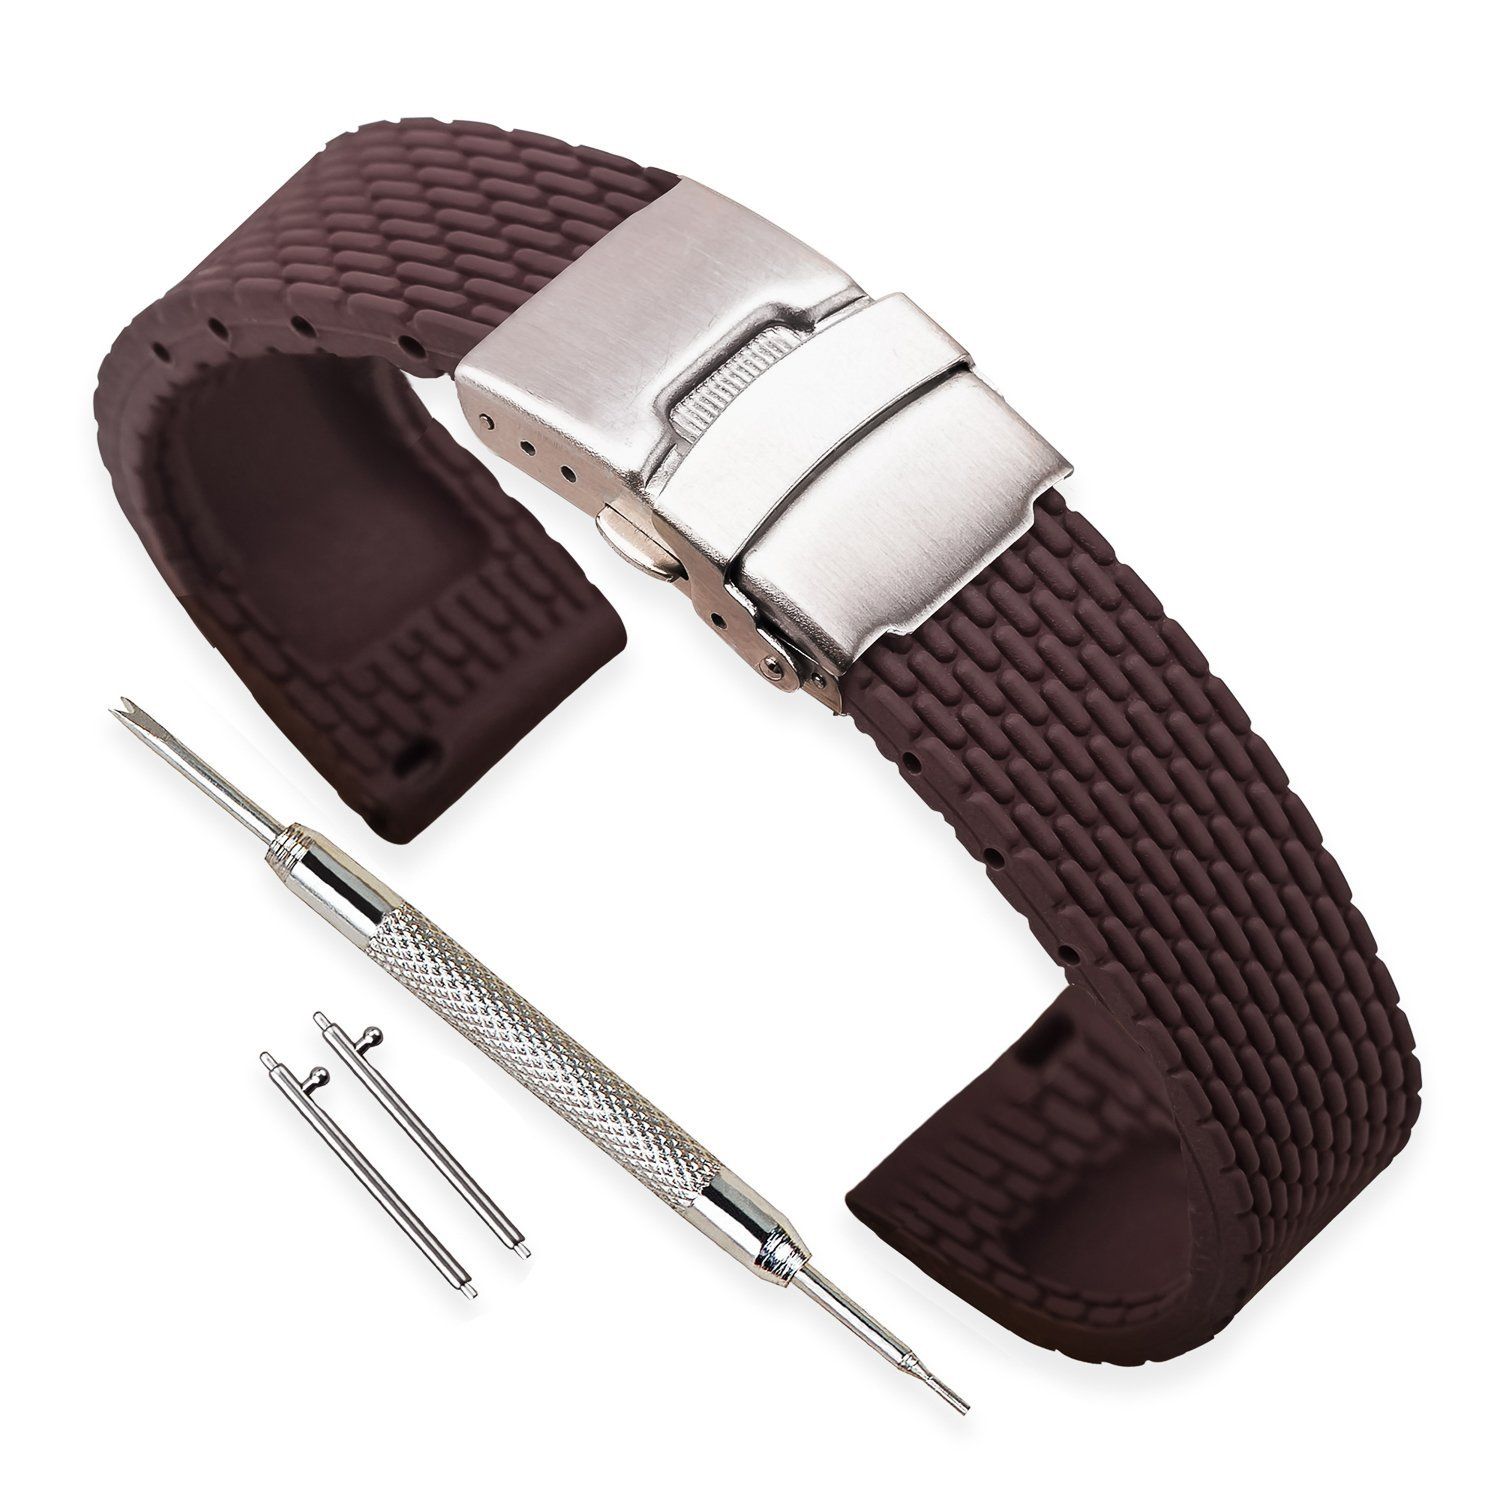 Ремешок для часов силикон с клипсой (22 мм, коричневый) Ремешки и браслеты для часов